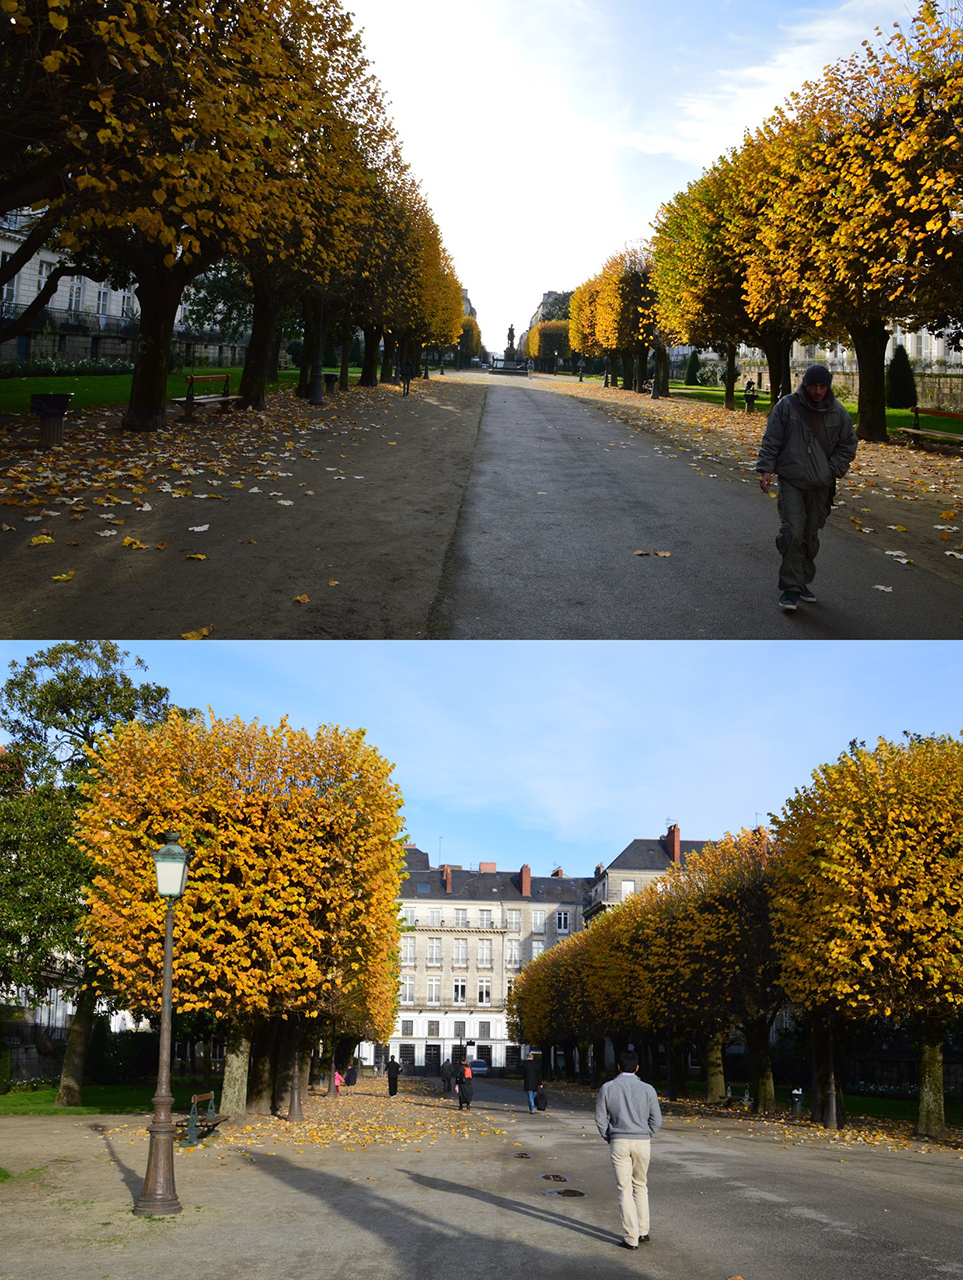 건물들로 둘러싸인 광장 안에 노랗게 물든 활엽수들이 도열해 있다. 